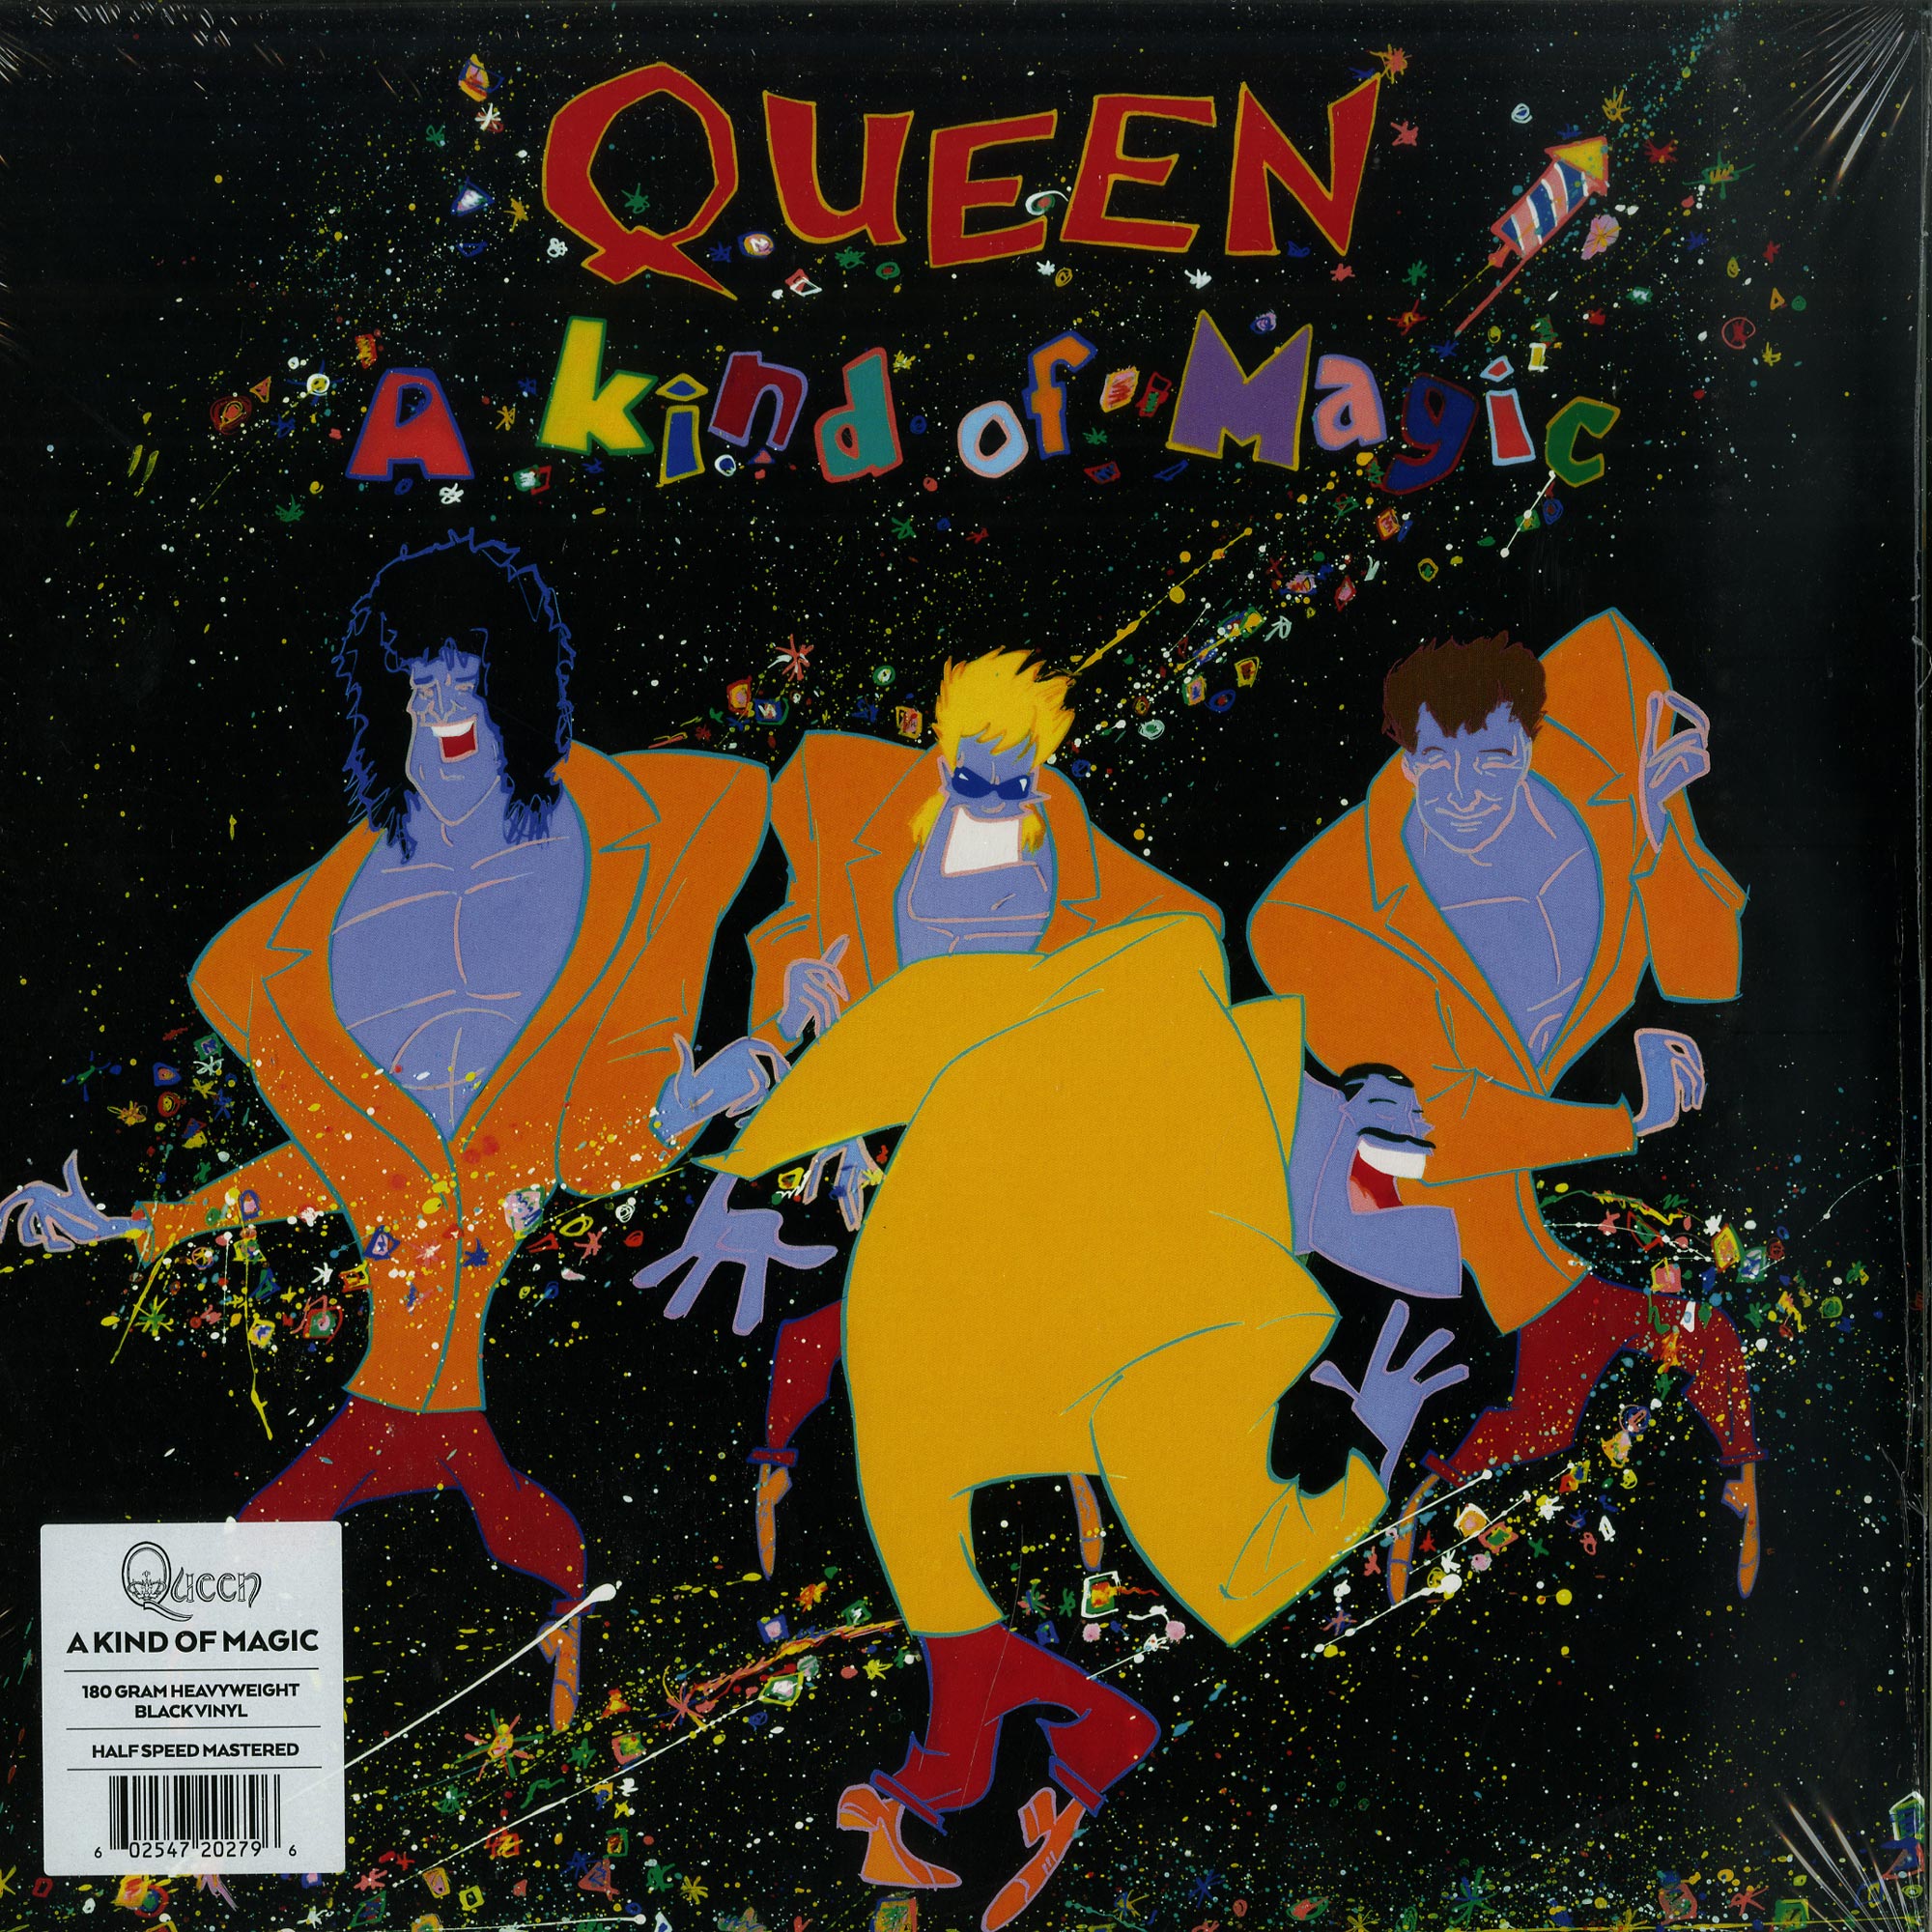 Magic обложка. Queen 1986 a kind of Magic обложка альбома. A kind of Magic альбом Квин. Queen a kind of Magic обложка. A kind of Magic Queen Vinyl.